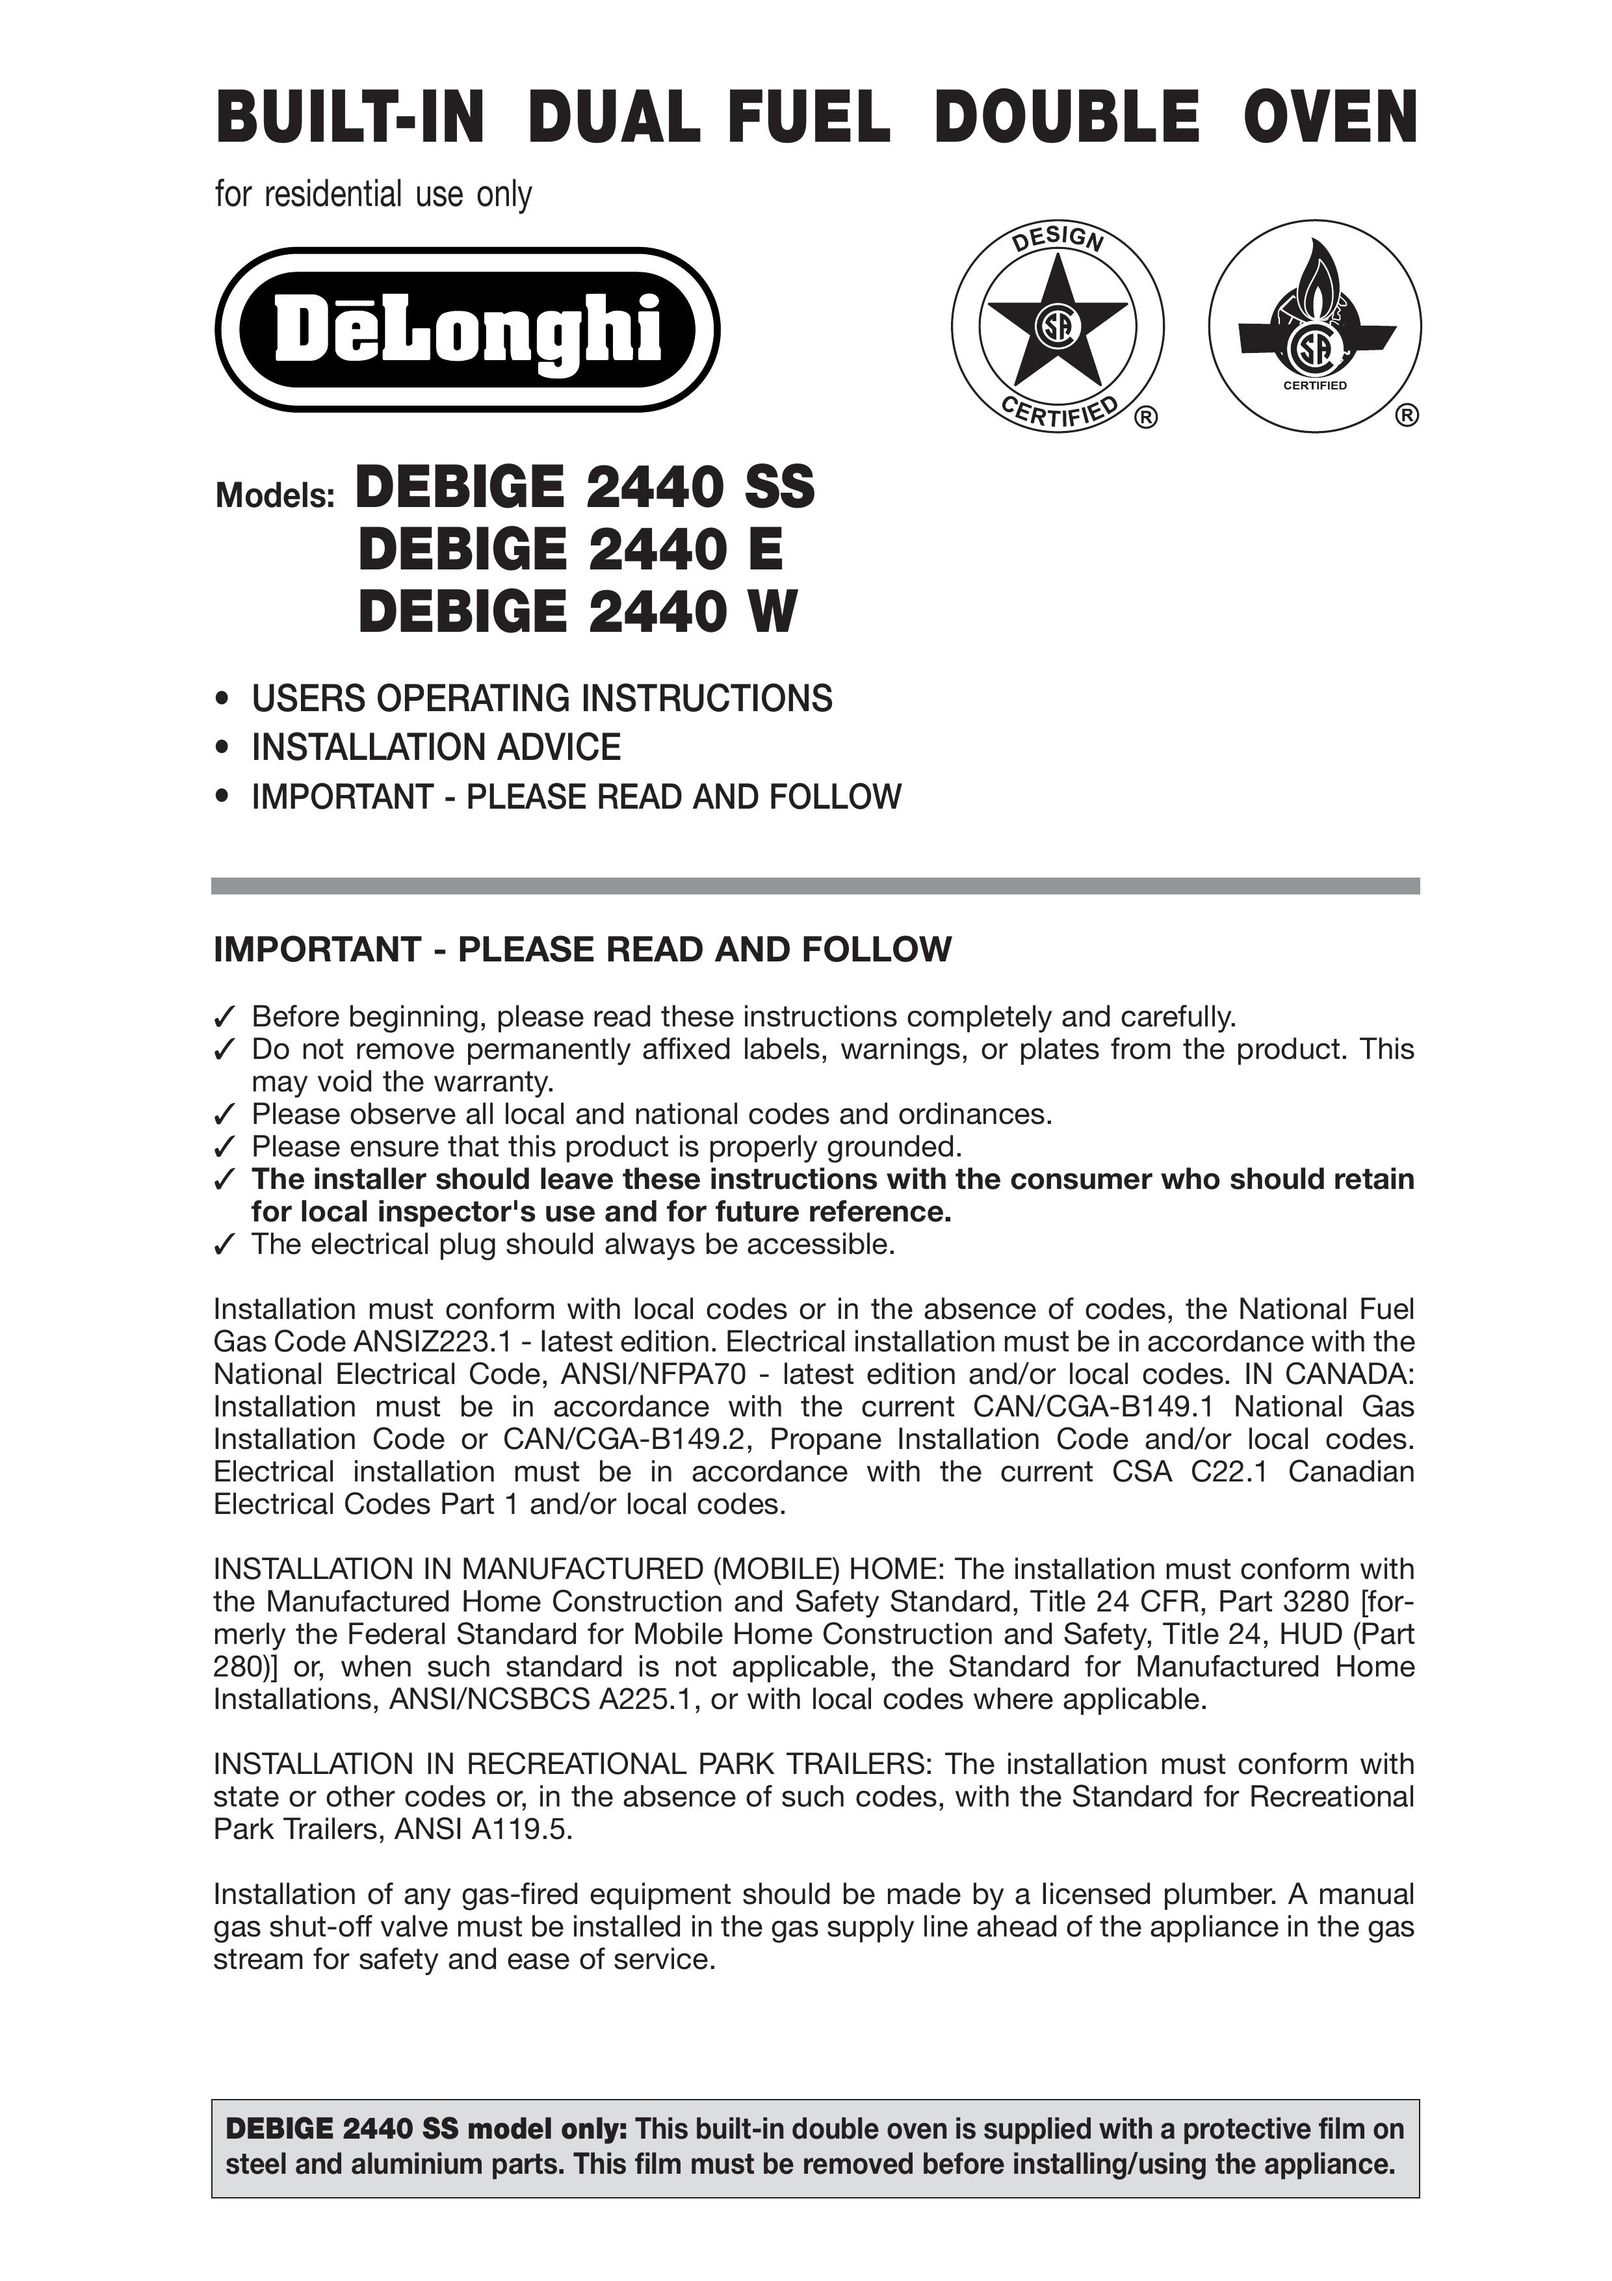 DeLonghi DEBIGE 2440 W Double Oven User Manual